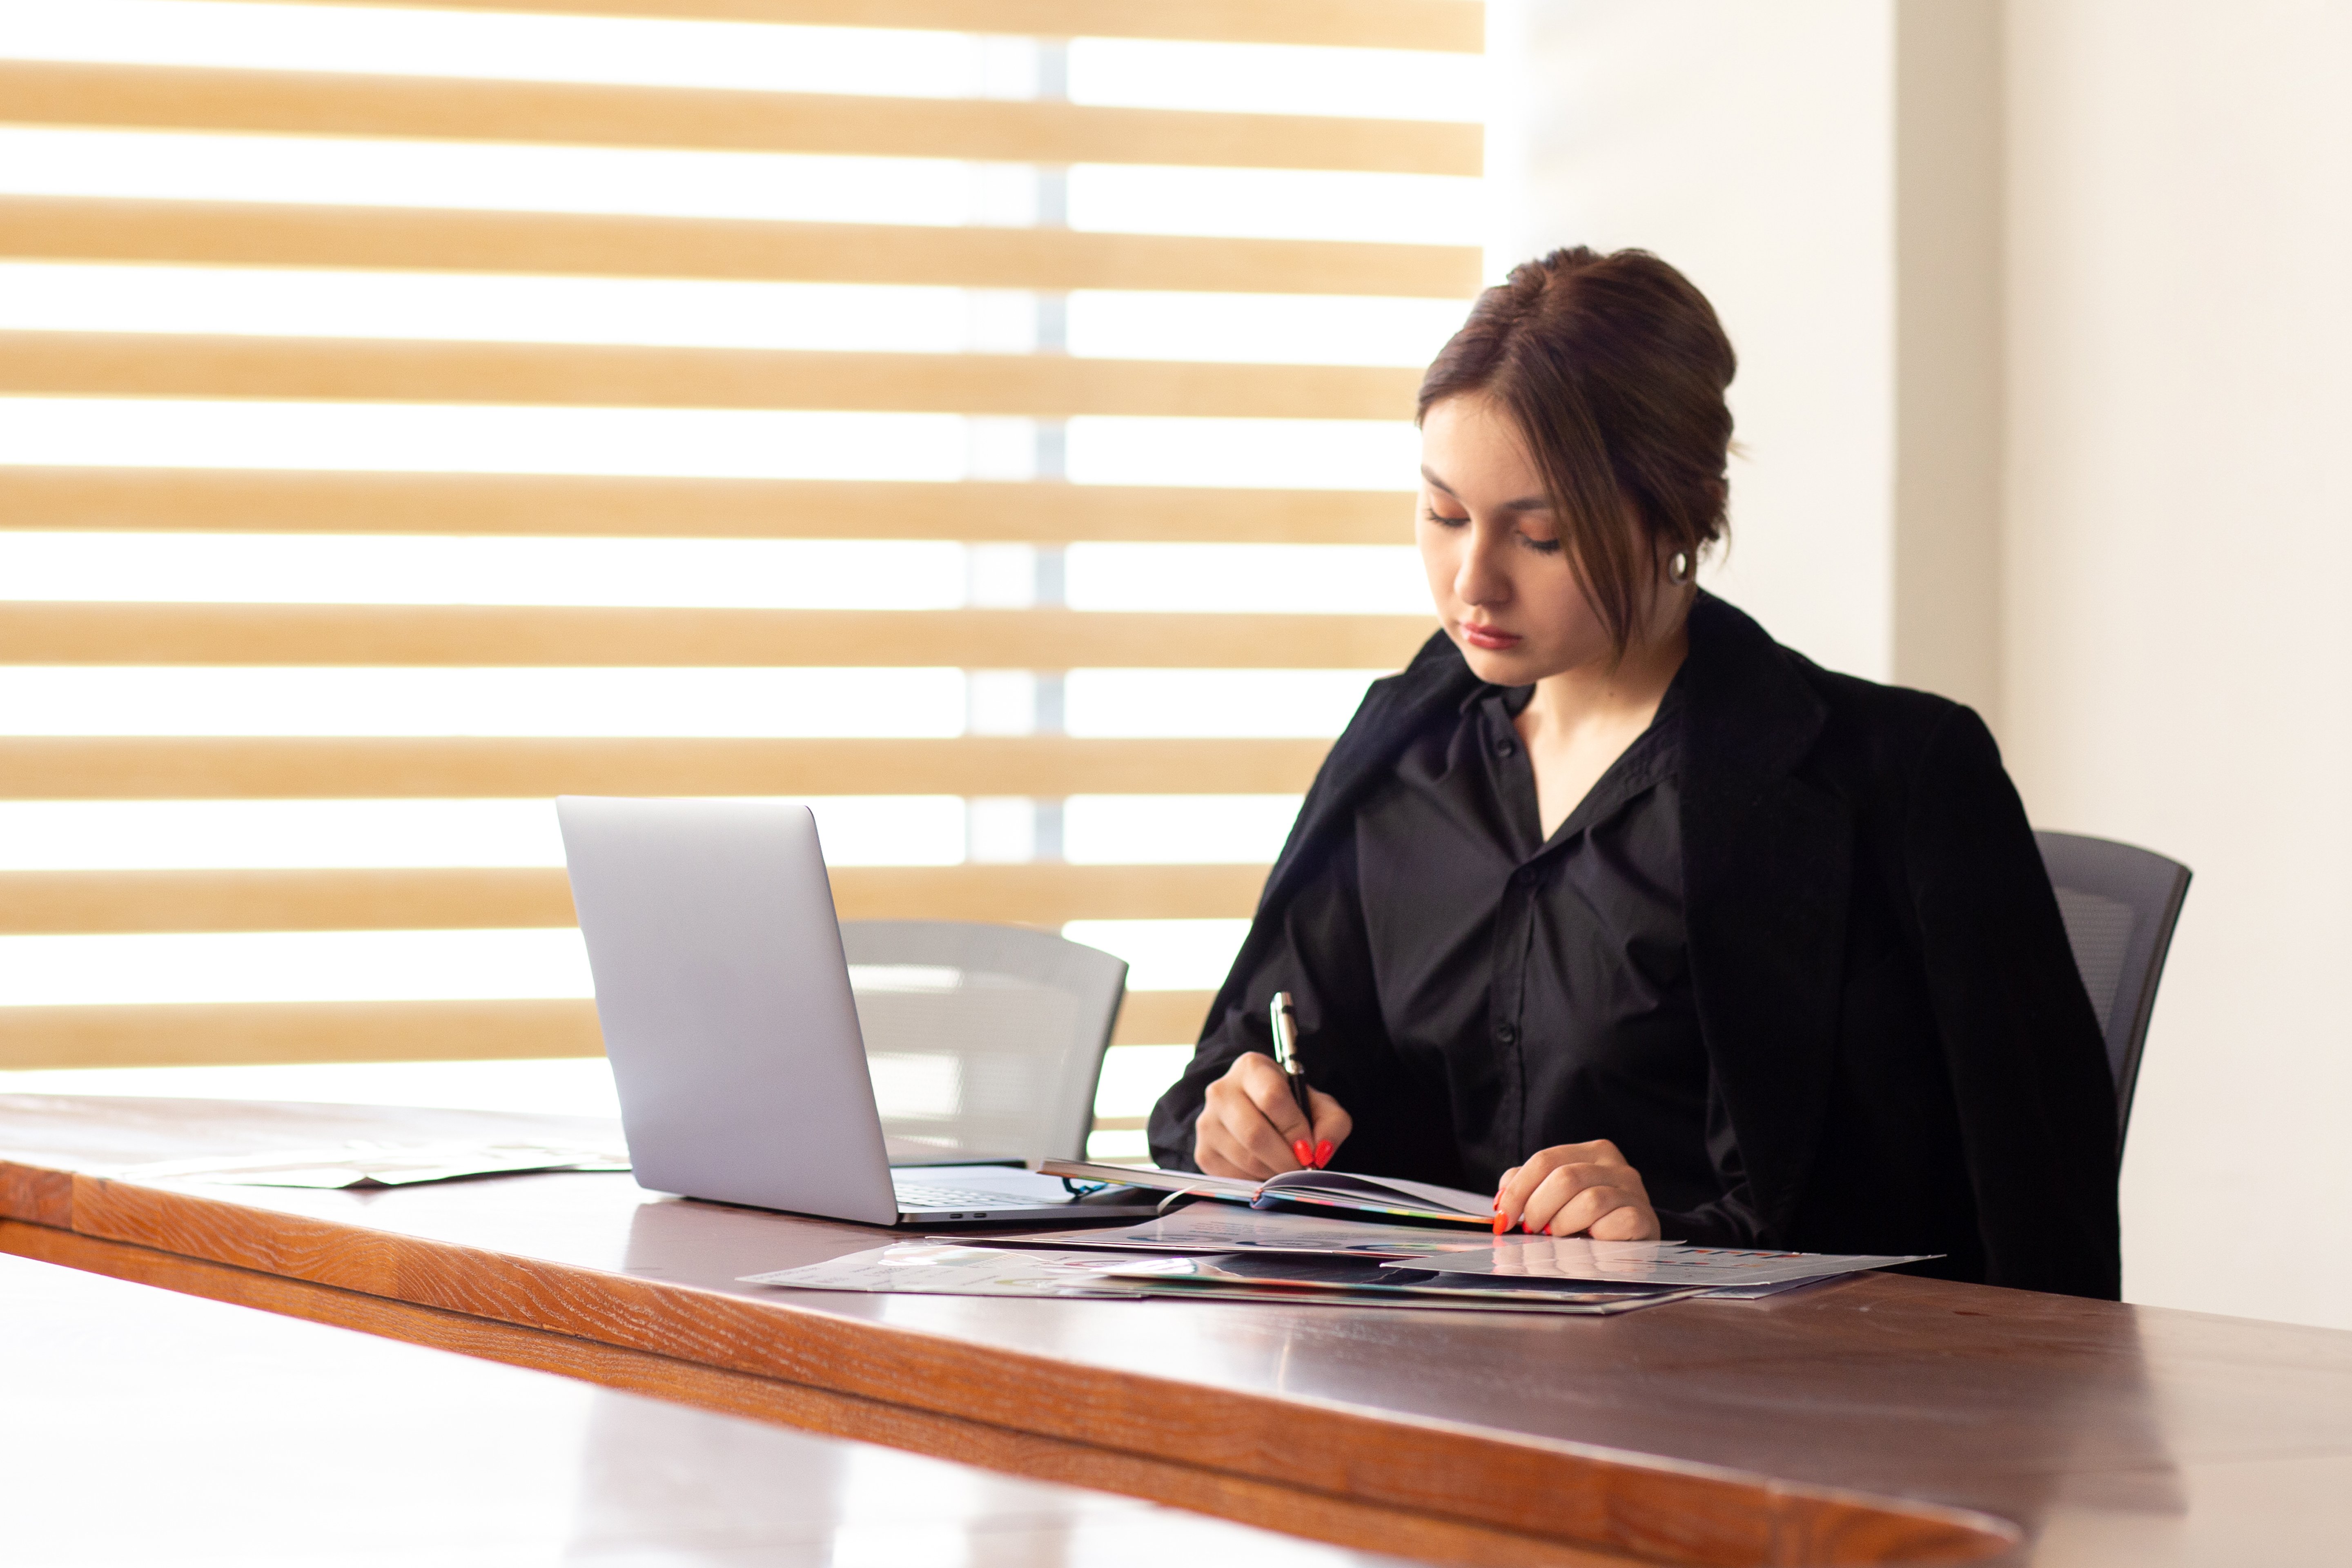 uma-vista-frontal-jovem-empresaria-linda-camisa-preta-jaqueta-preta-usando-seu-laptop-prata-escrita-lendo-trabalhando-dentro-de-seu-escritorio-trabalho-edificio-de-trabalho